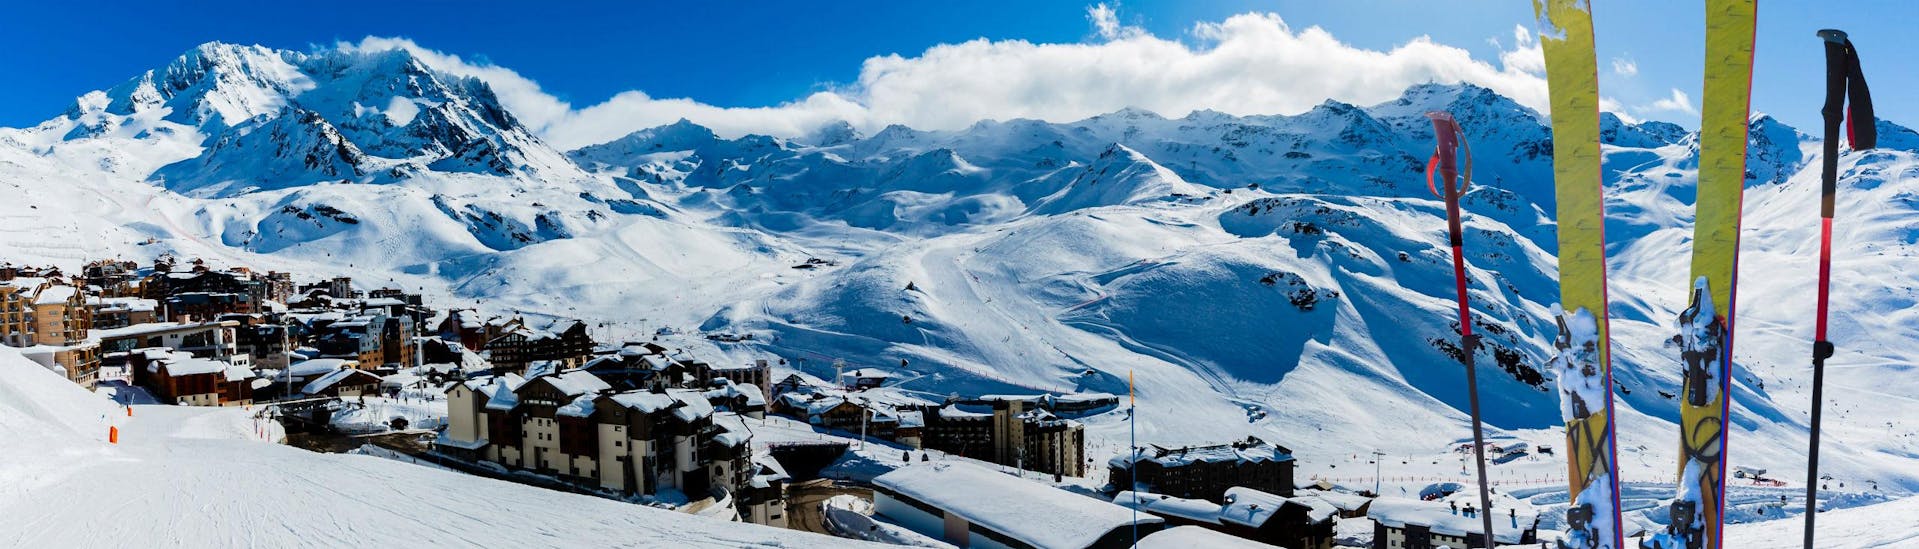 Une paire de skis plantée dans la neige sur l'une des pistes de Val Thorens, une station de ski française où les écoles de ski locales proposent différents cours de ski à ceux qui souhaitent apprendre à skier.